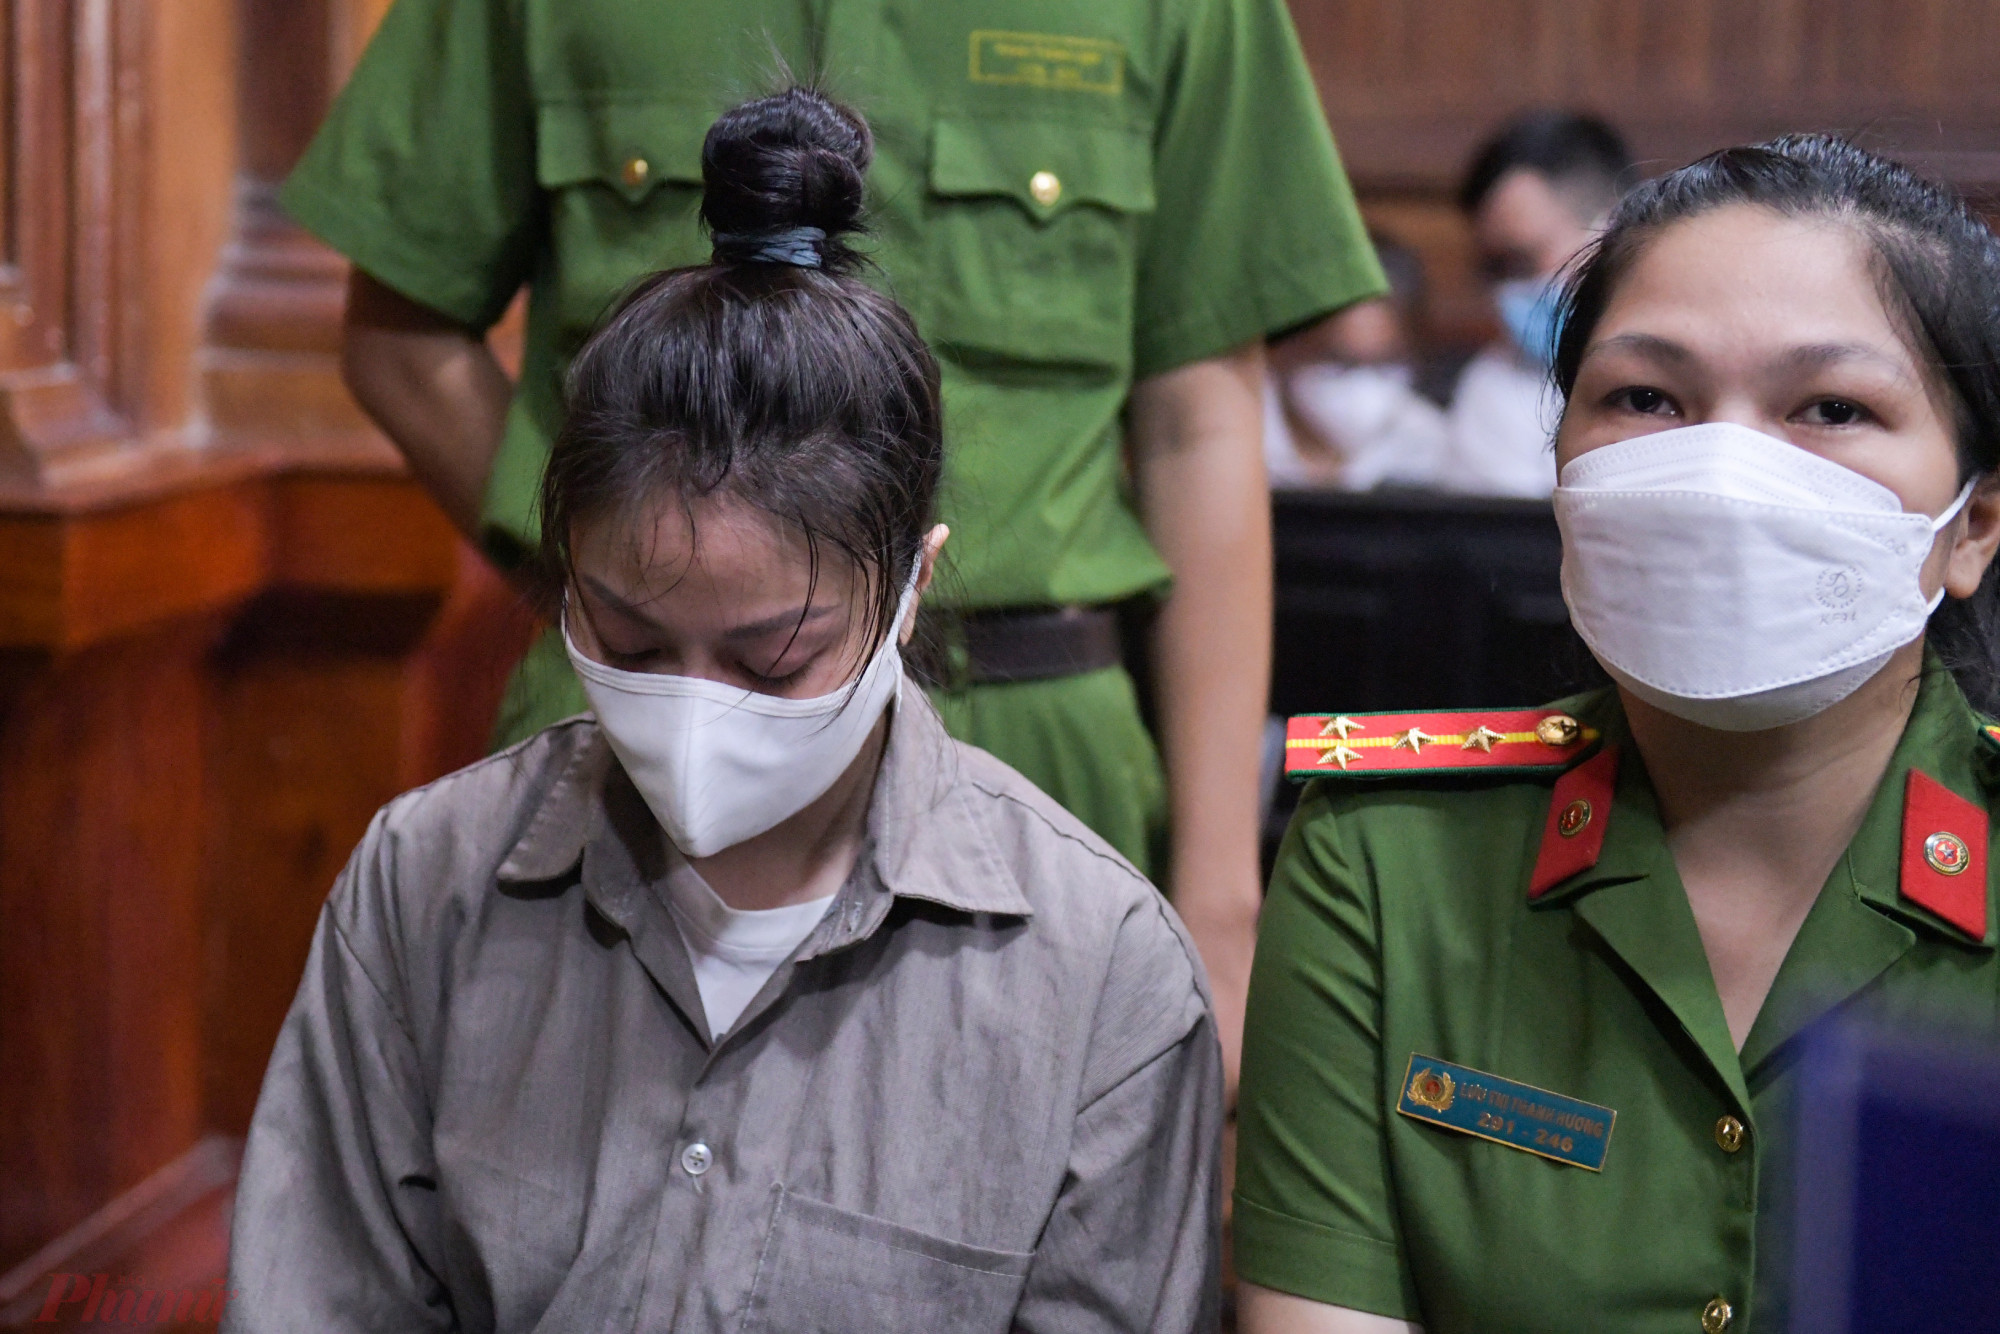 Ánh mắt luôn nhắm nghiền, lộ rõ vẻ mệt mỏi của bị cáo Trang trong suốt phiên tòa diễn ra.